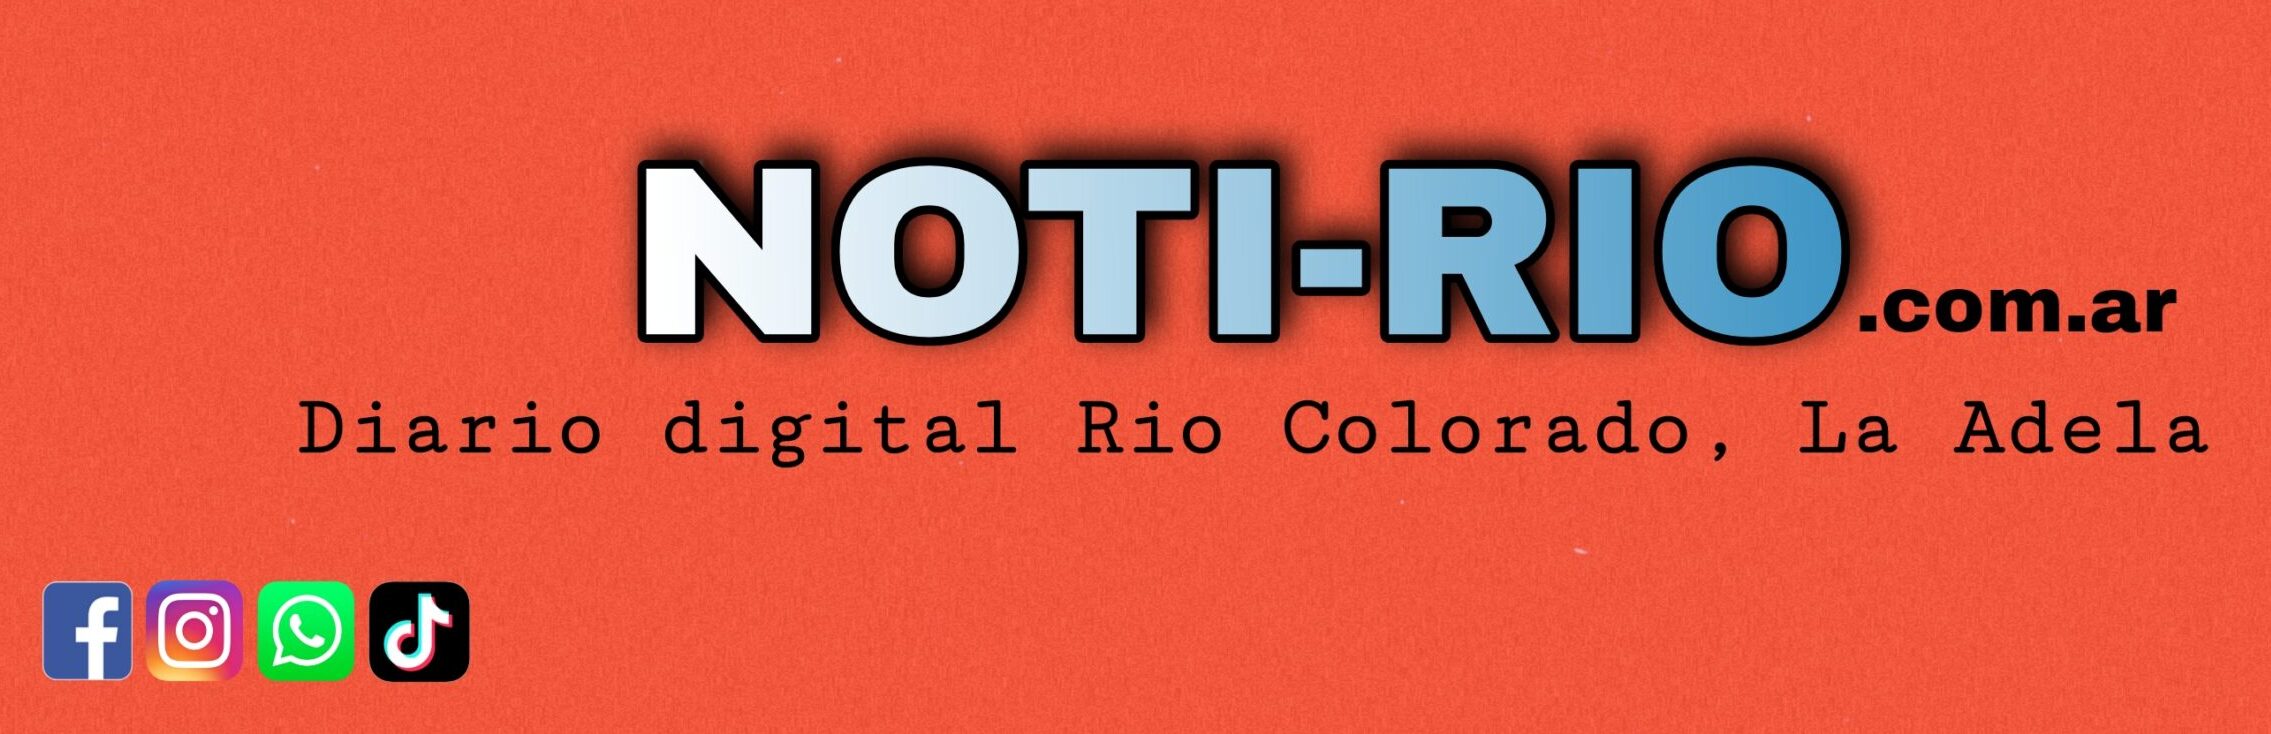 NOT-RIO.com.ar